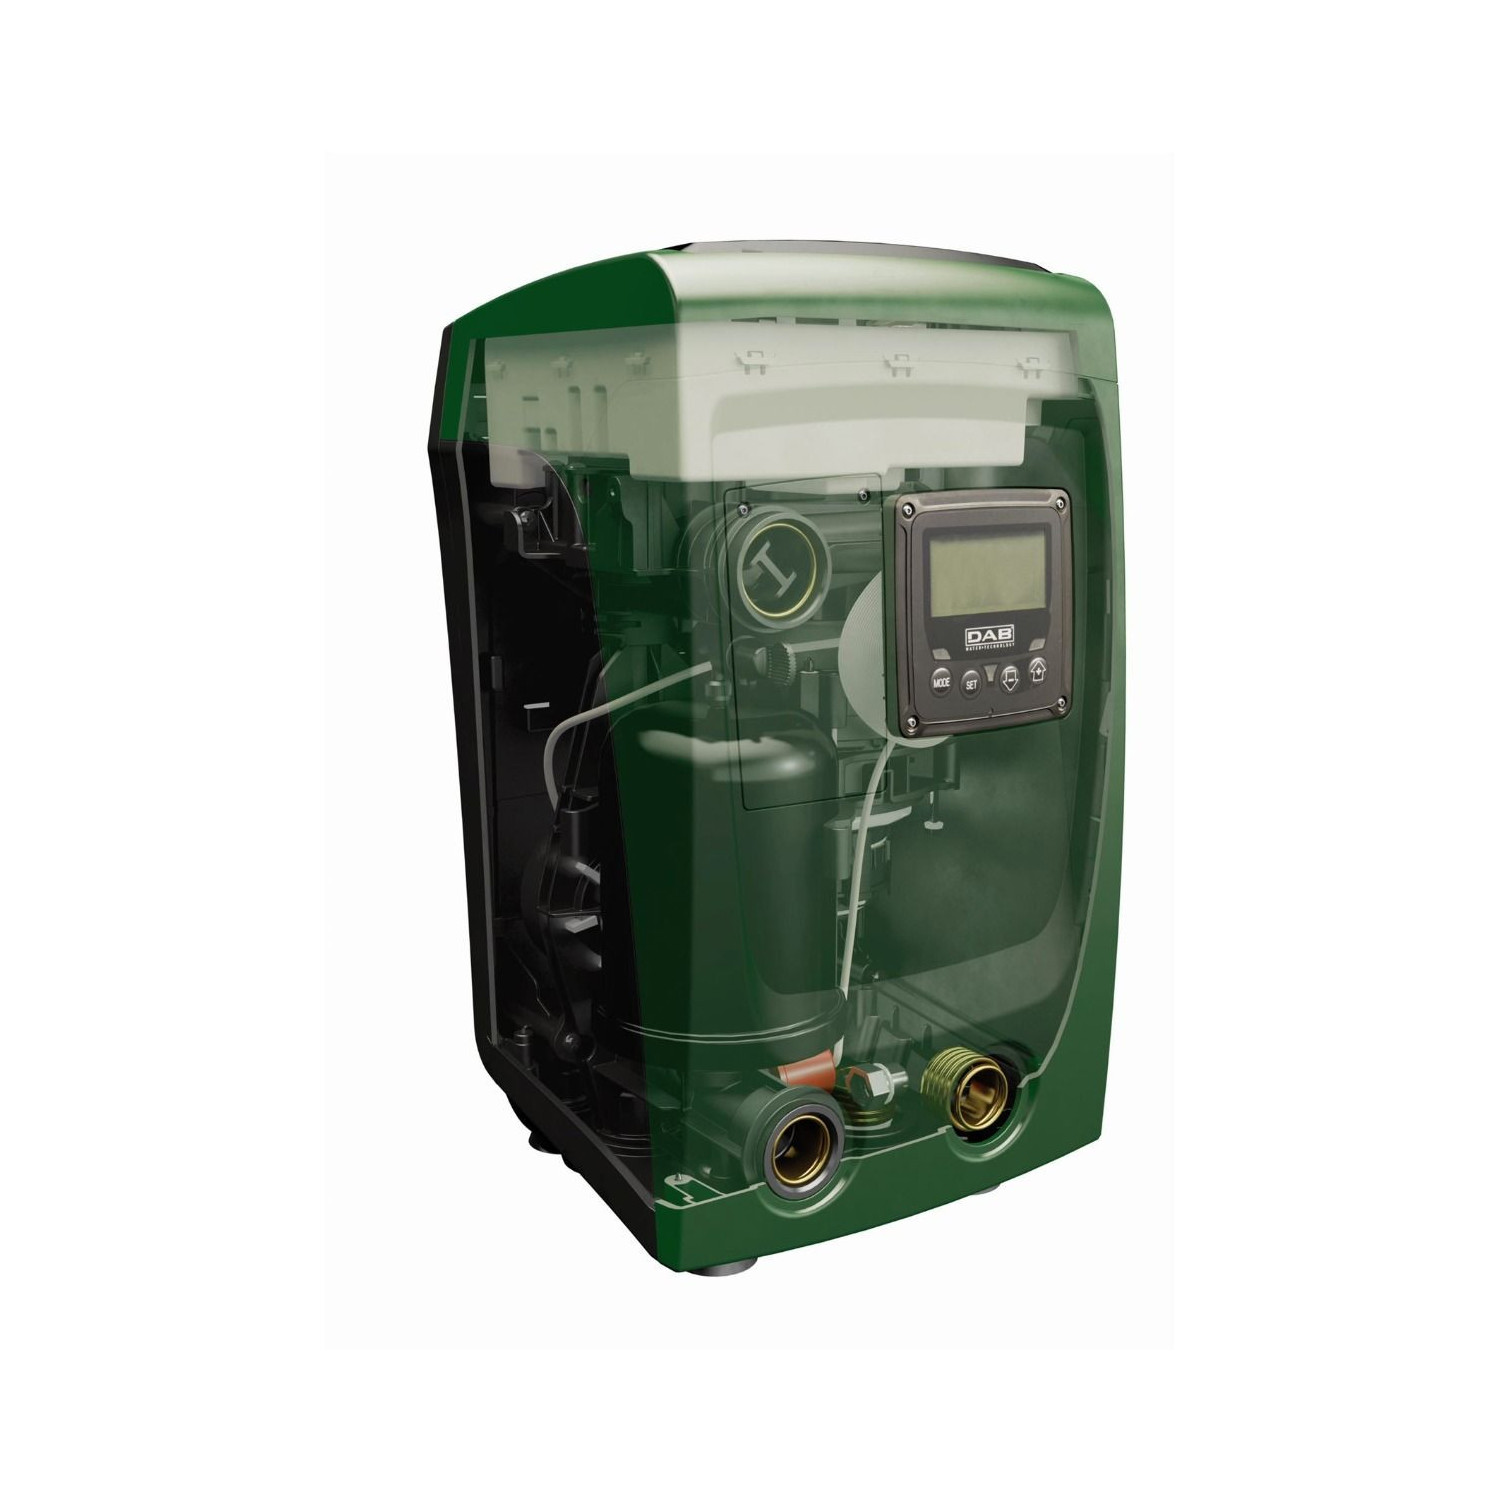 E SYBOX MINI - Surpresseur eau potable à pression constante DAB à vitesse variable - 0,85kW 4,2m3/h 220V